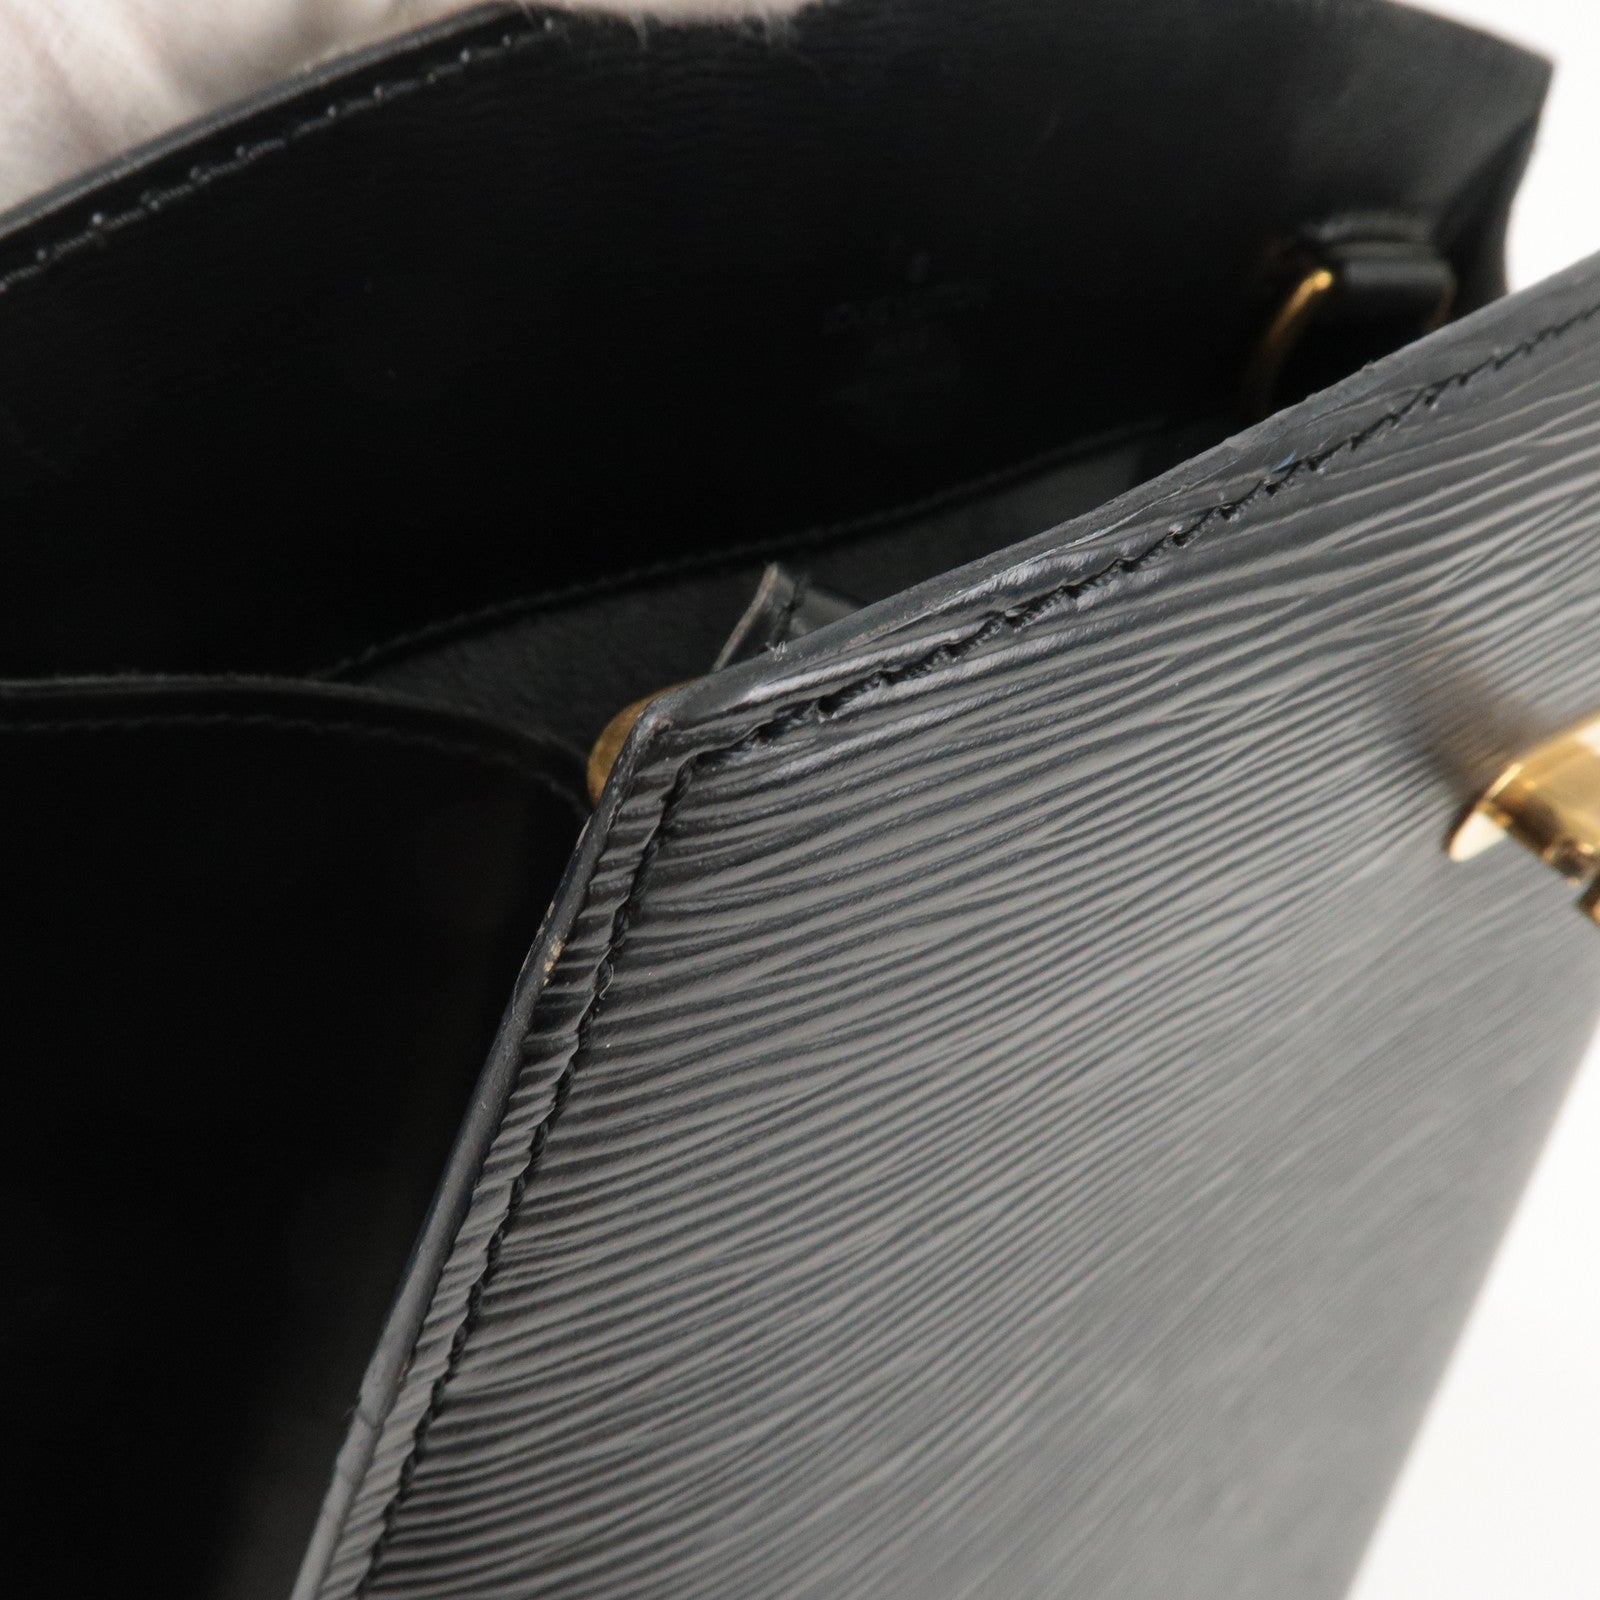 Black Louis Vuitton Epi Cluny Shoulder Bag, Infrastructure-intelligenceShops Revival